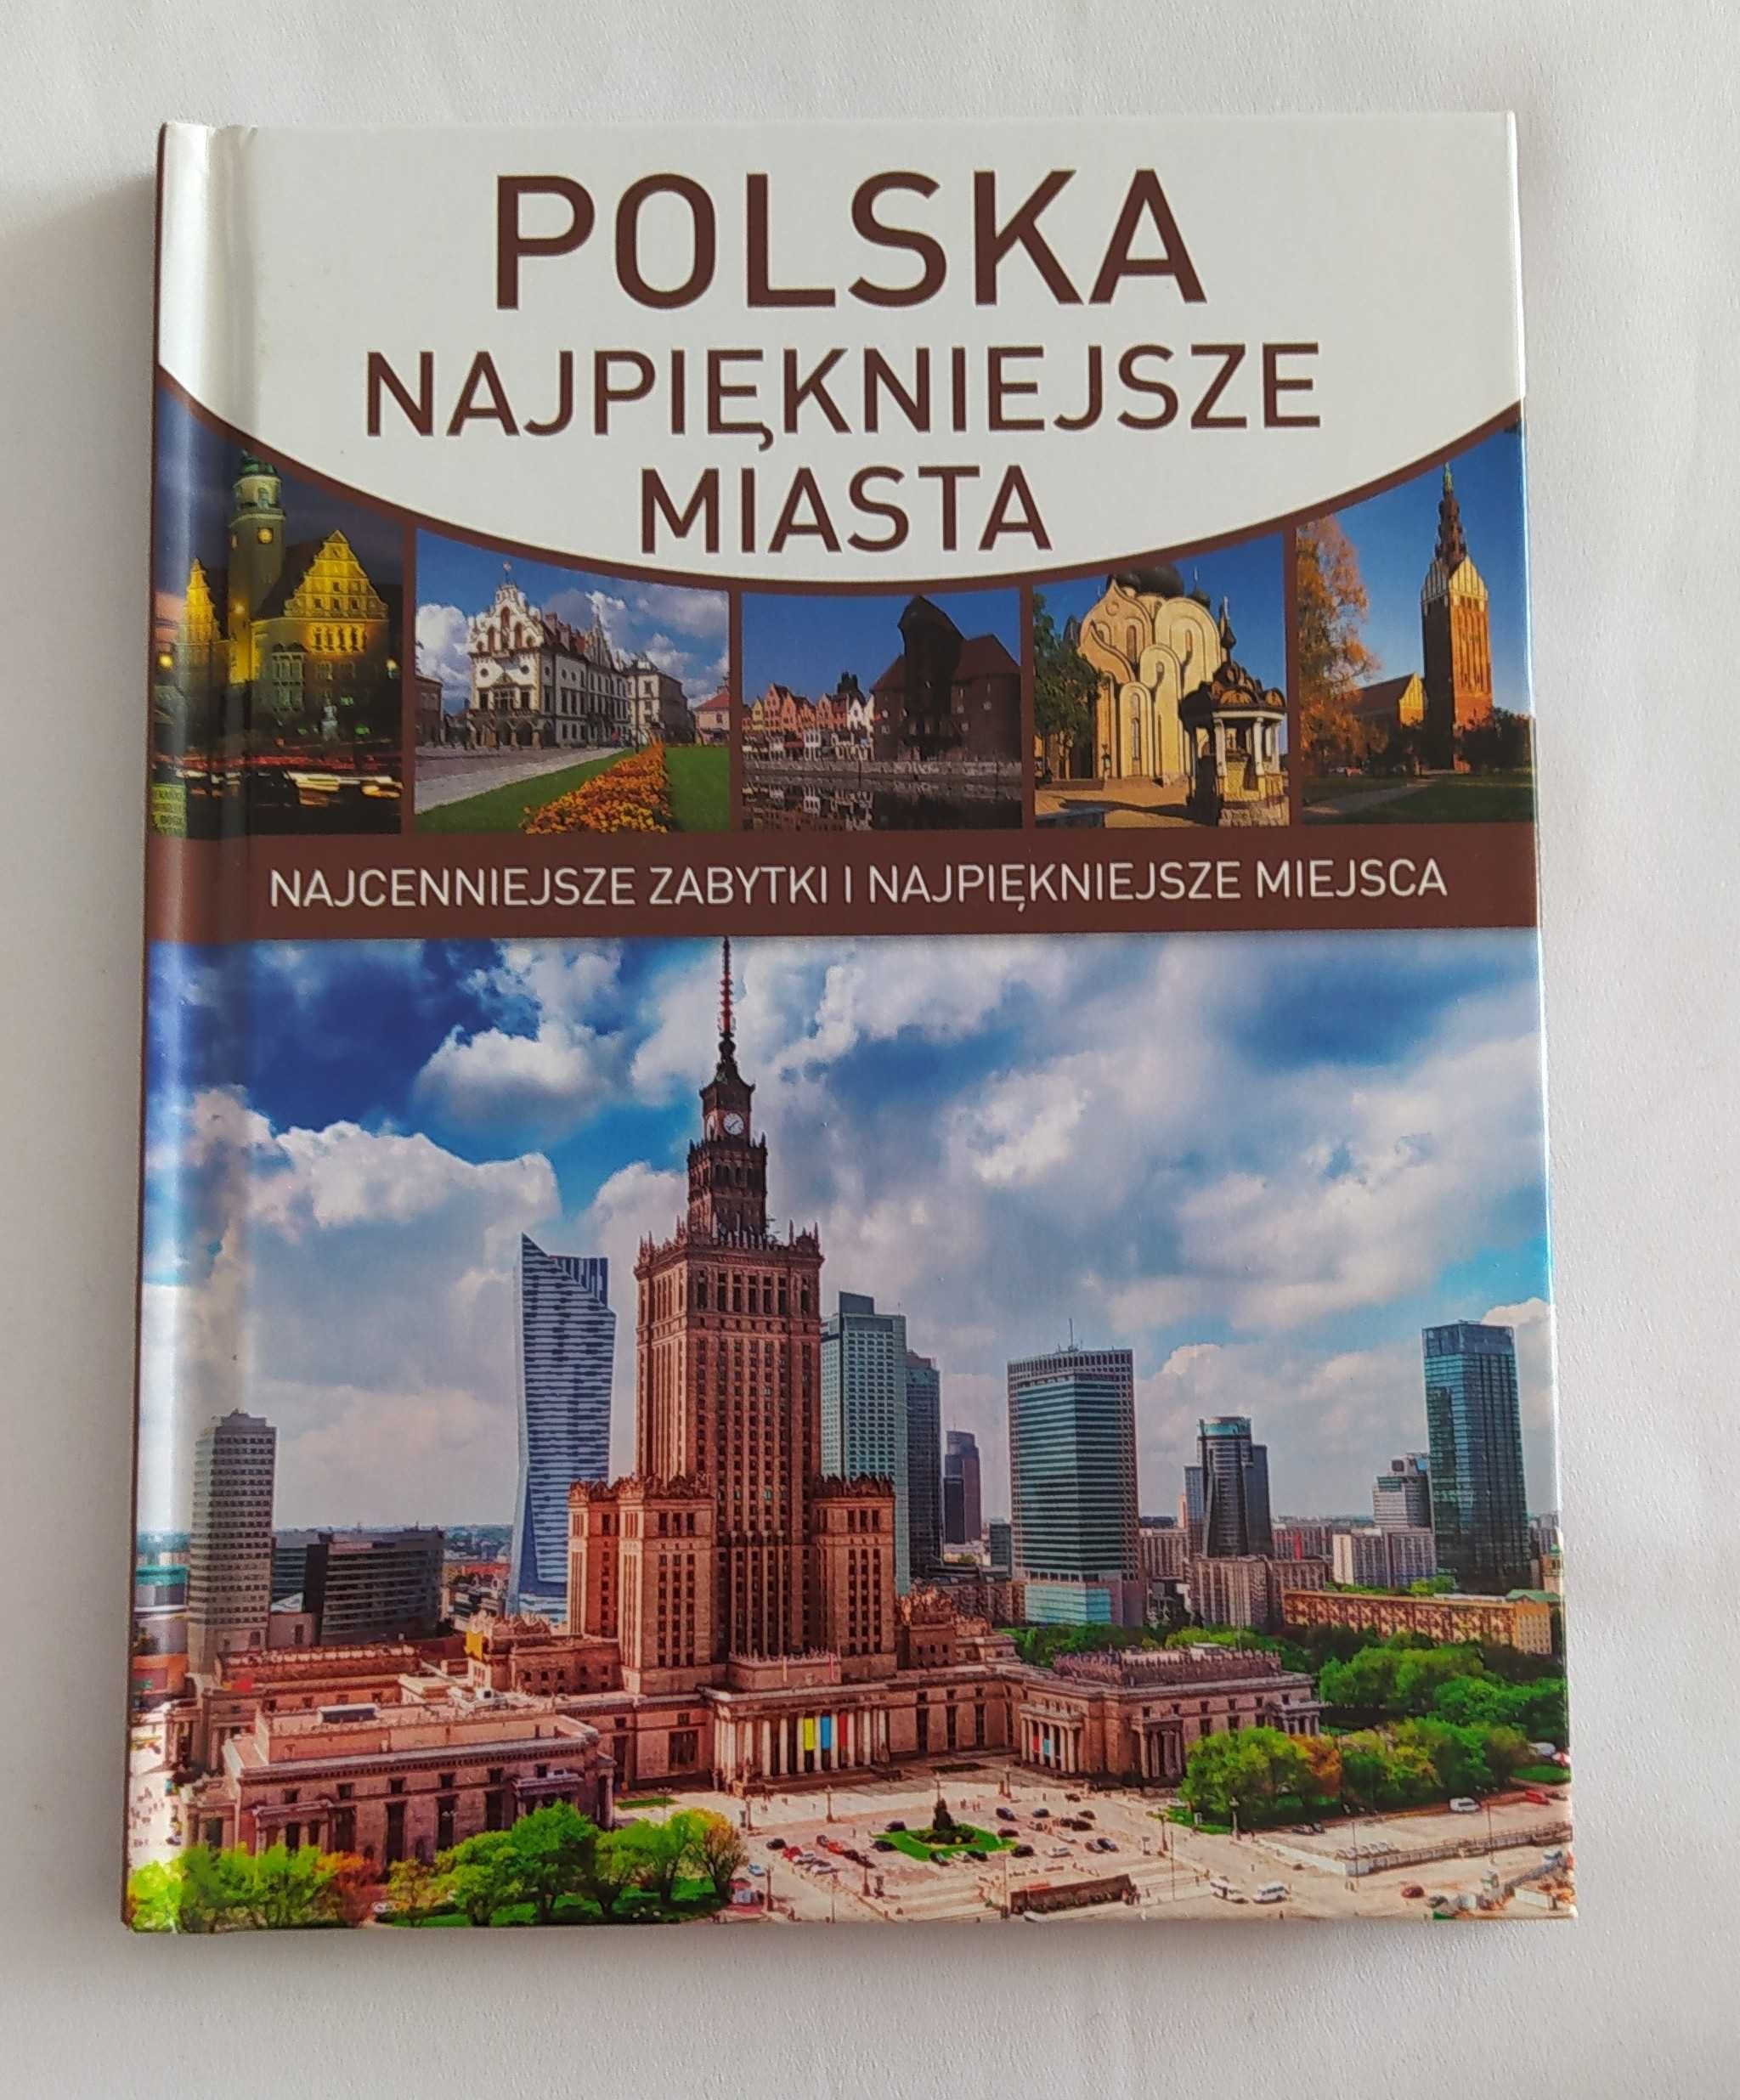 POLSKA najpiękniejsze miasta – Marta Dvořák